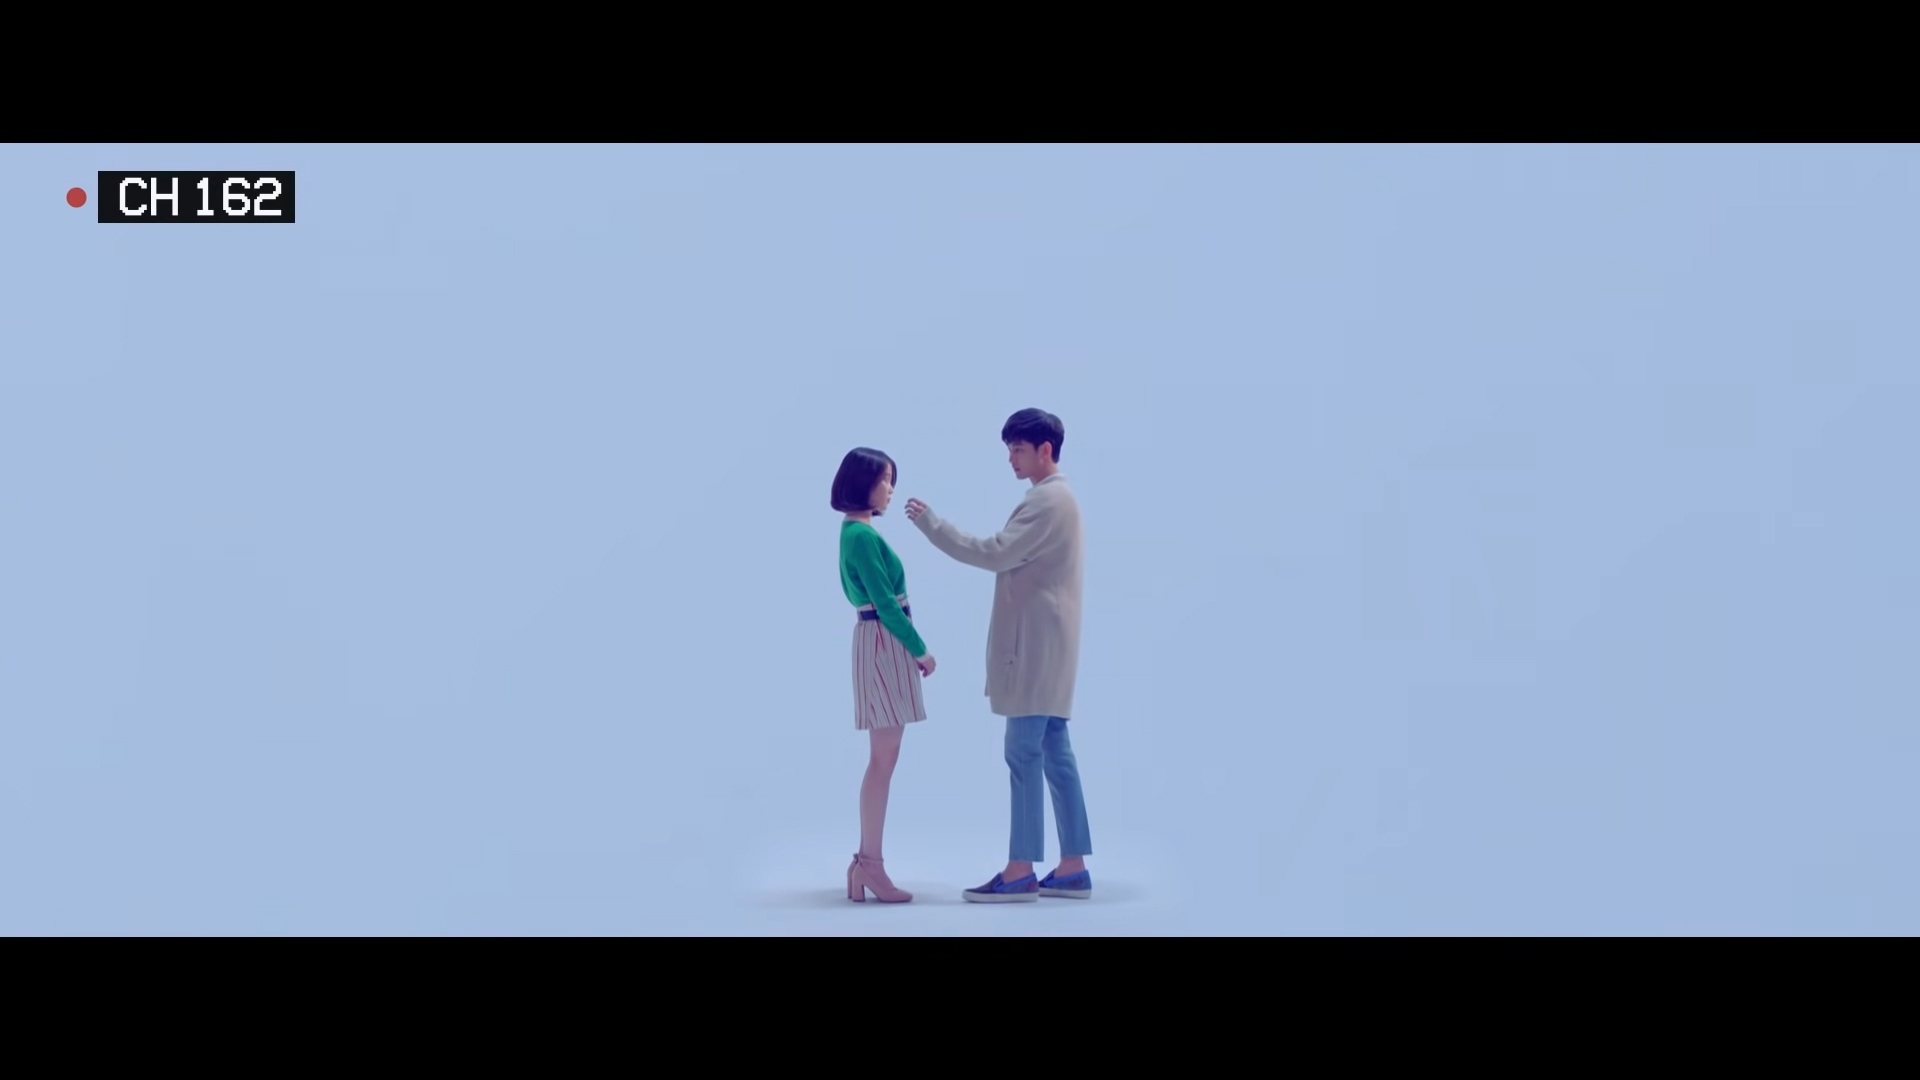 ca sĩ IU mặc áo xanh, chân váy sọc trong MV ending scene